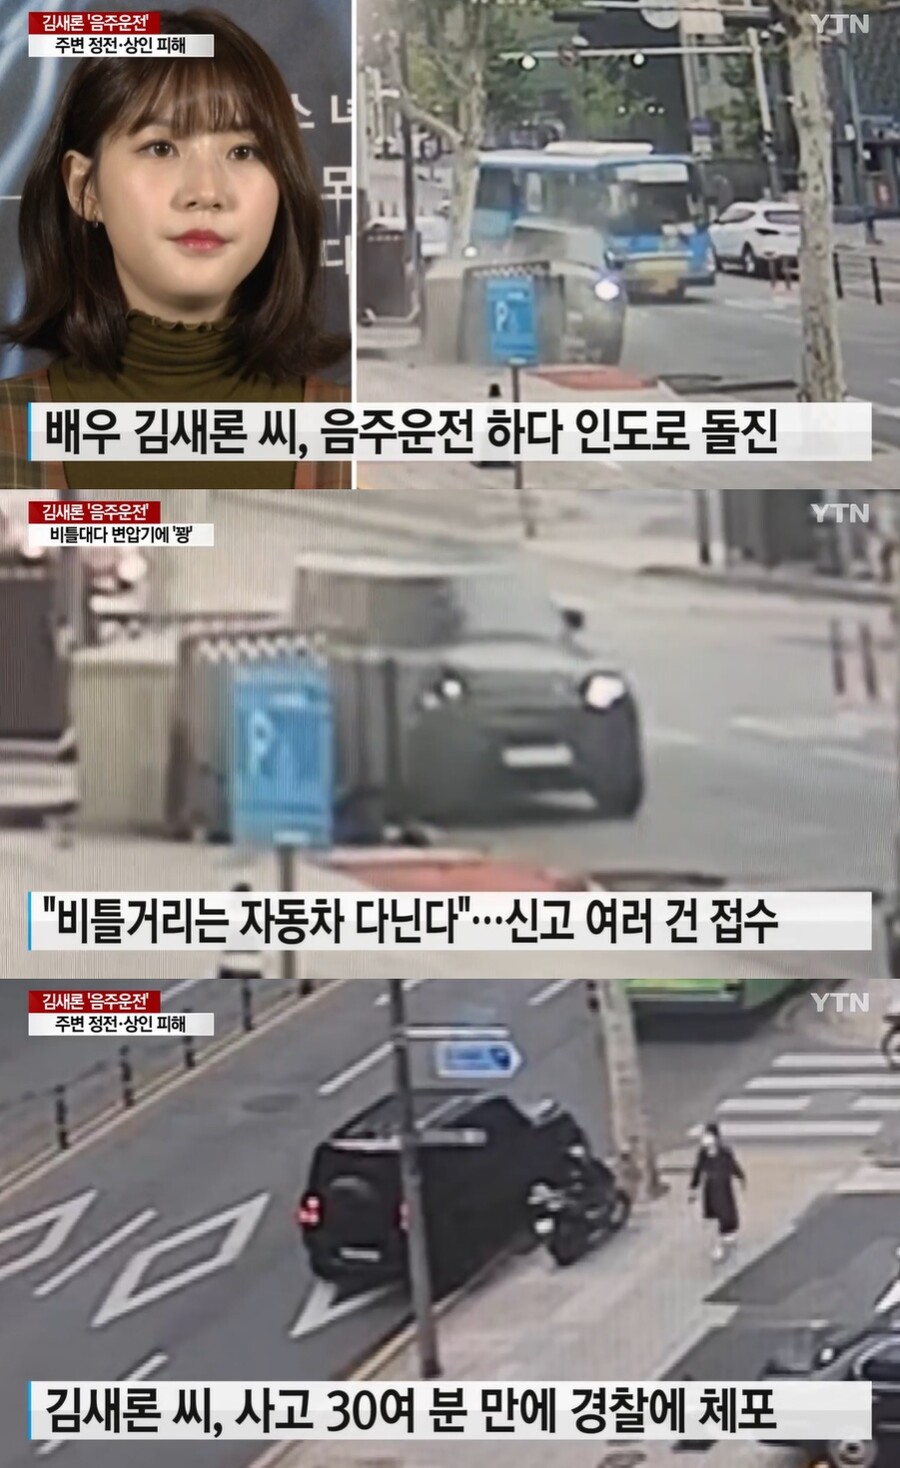 ▲ 김새론. 출처| YTN 영상 캡처